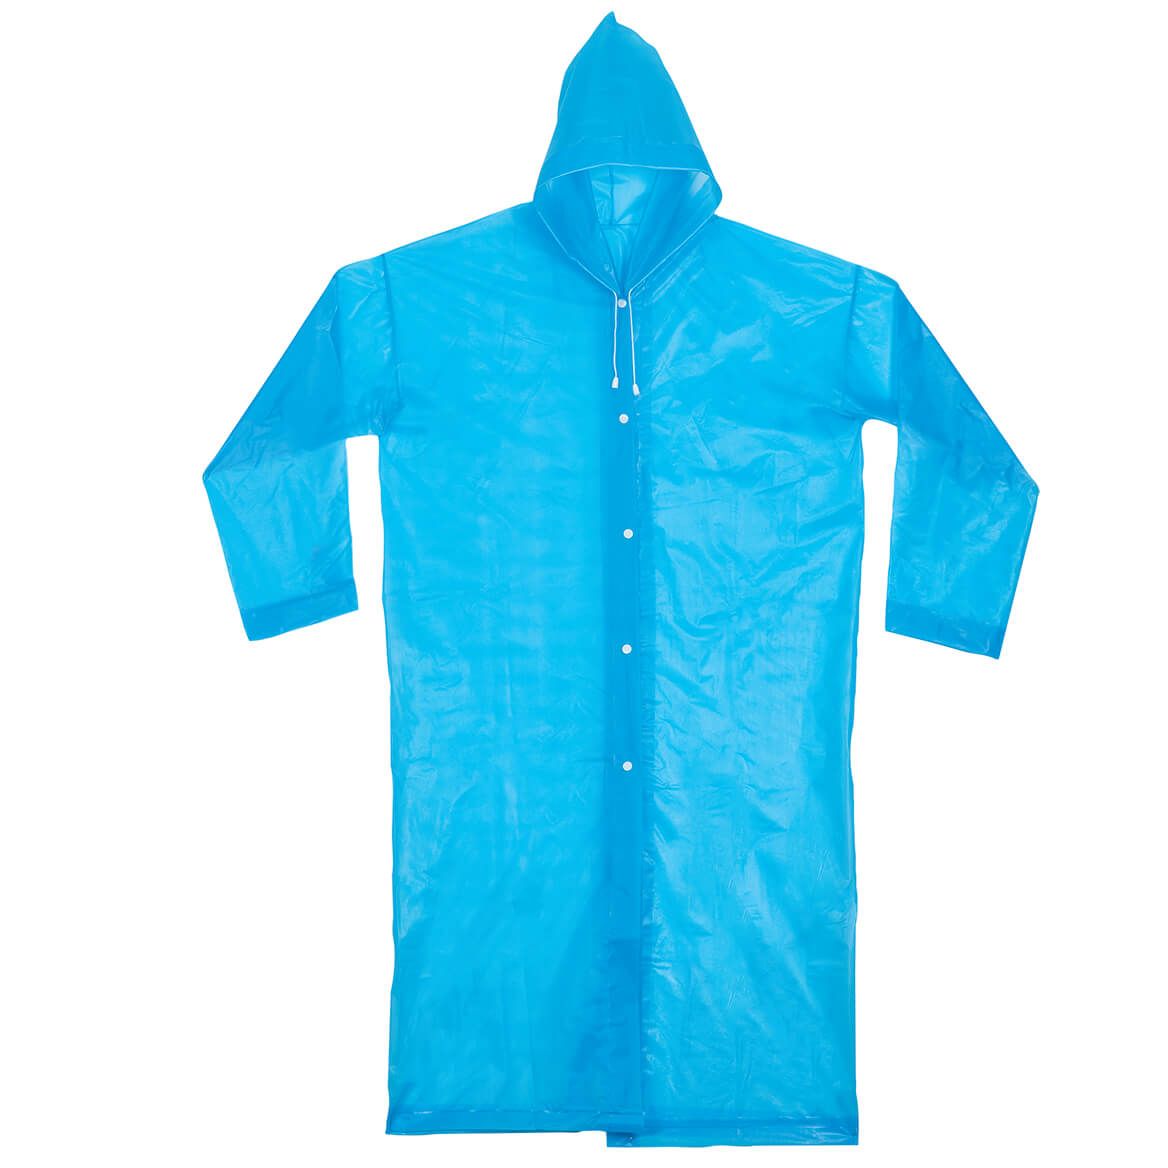 Raincoat + '-' + 376157